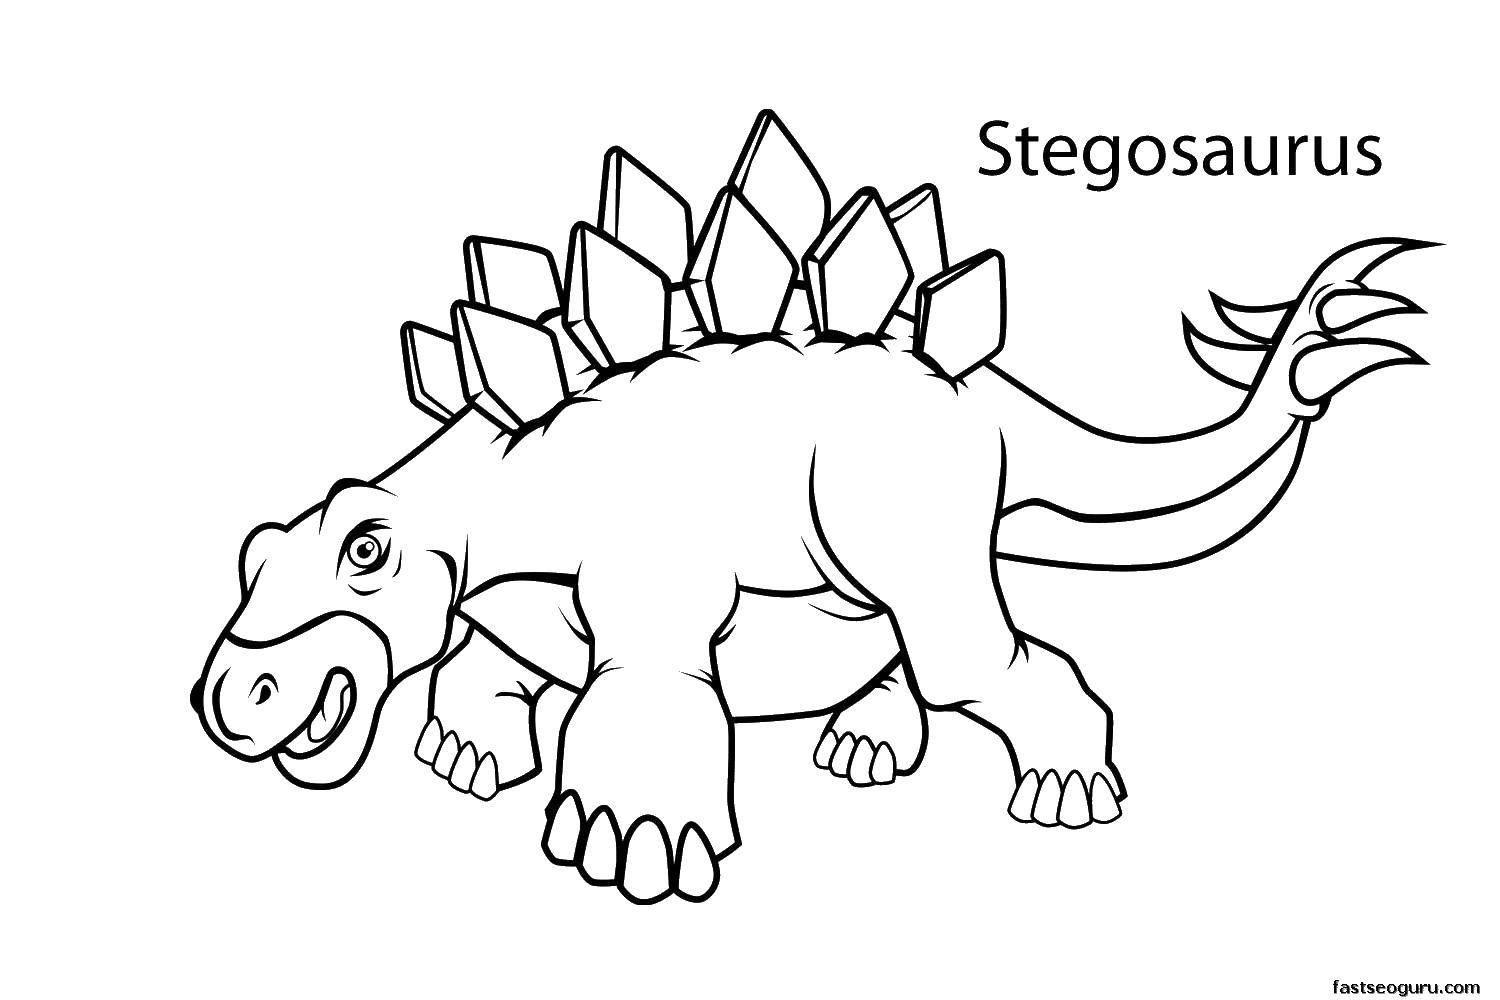 Coloring Stegosaurus. Category Jurassic Park. Tags:  Jurassic Park, dinosaurs, snehota.